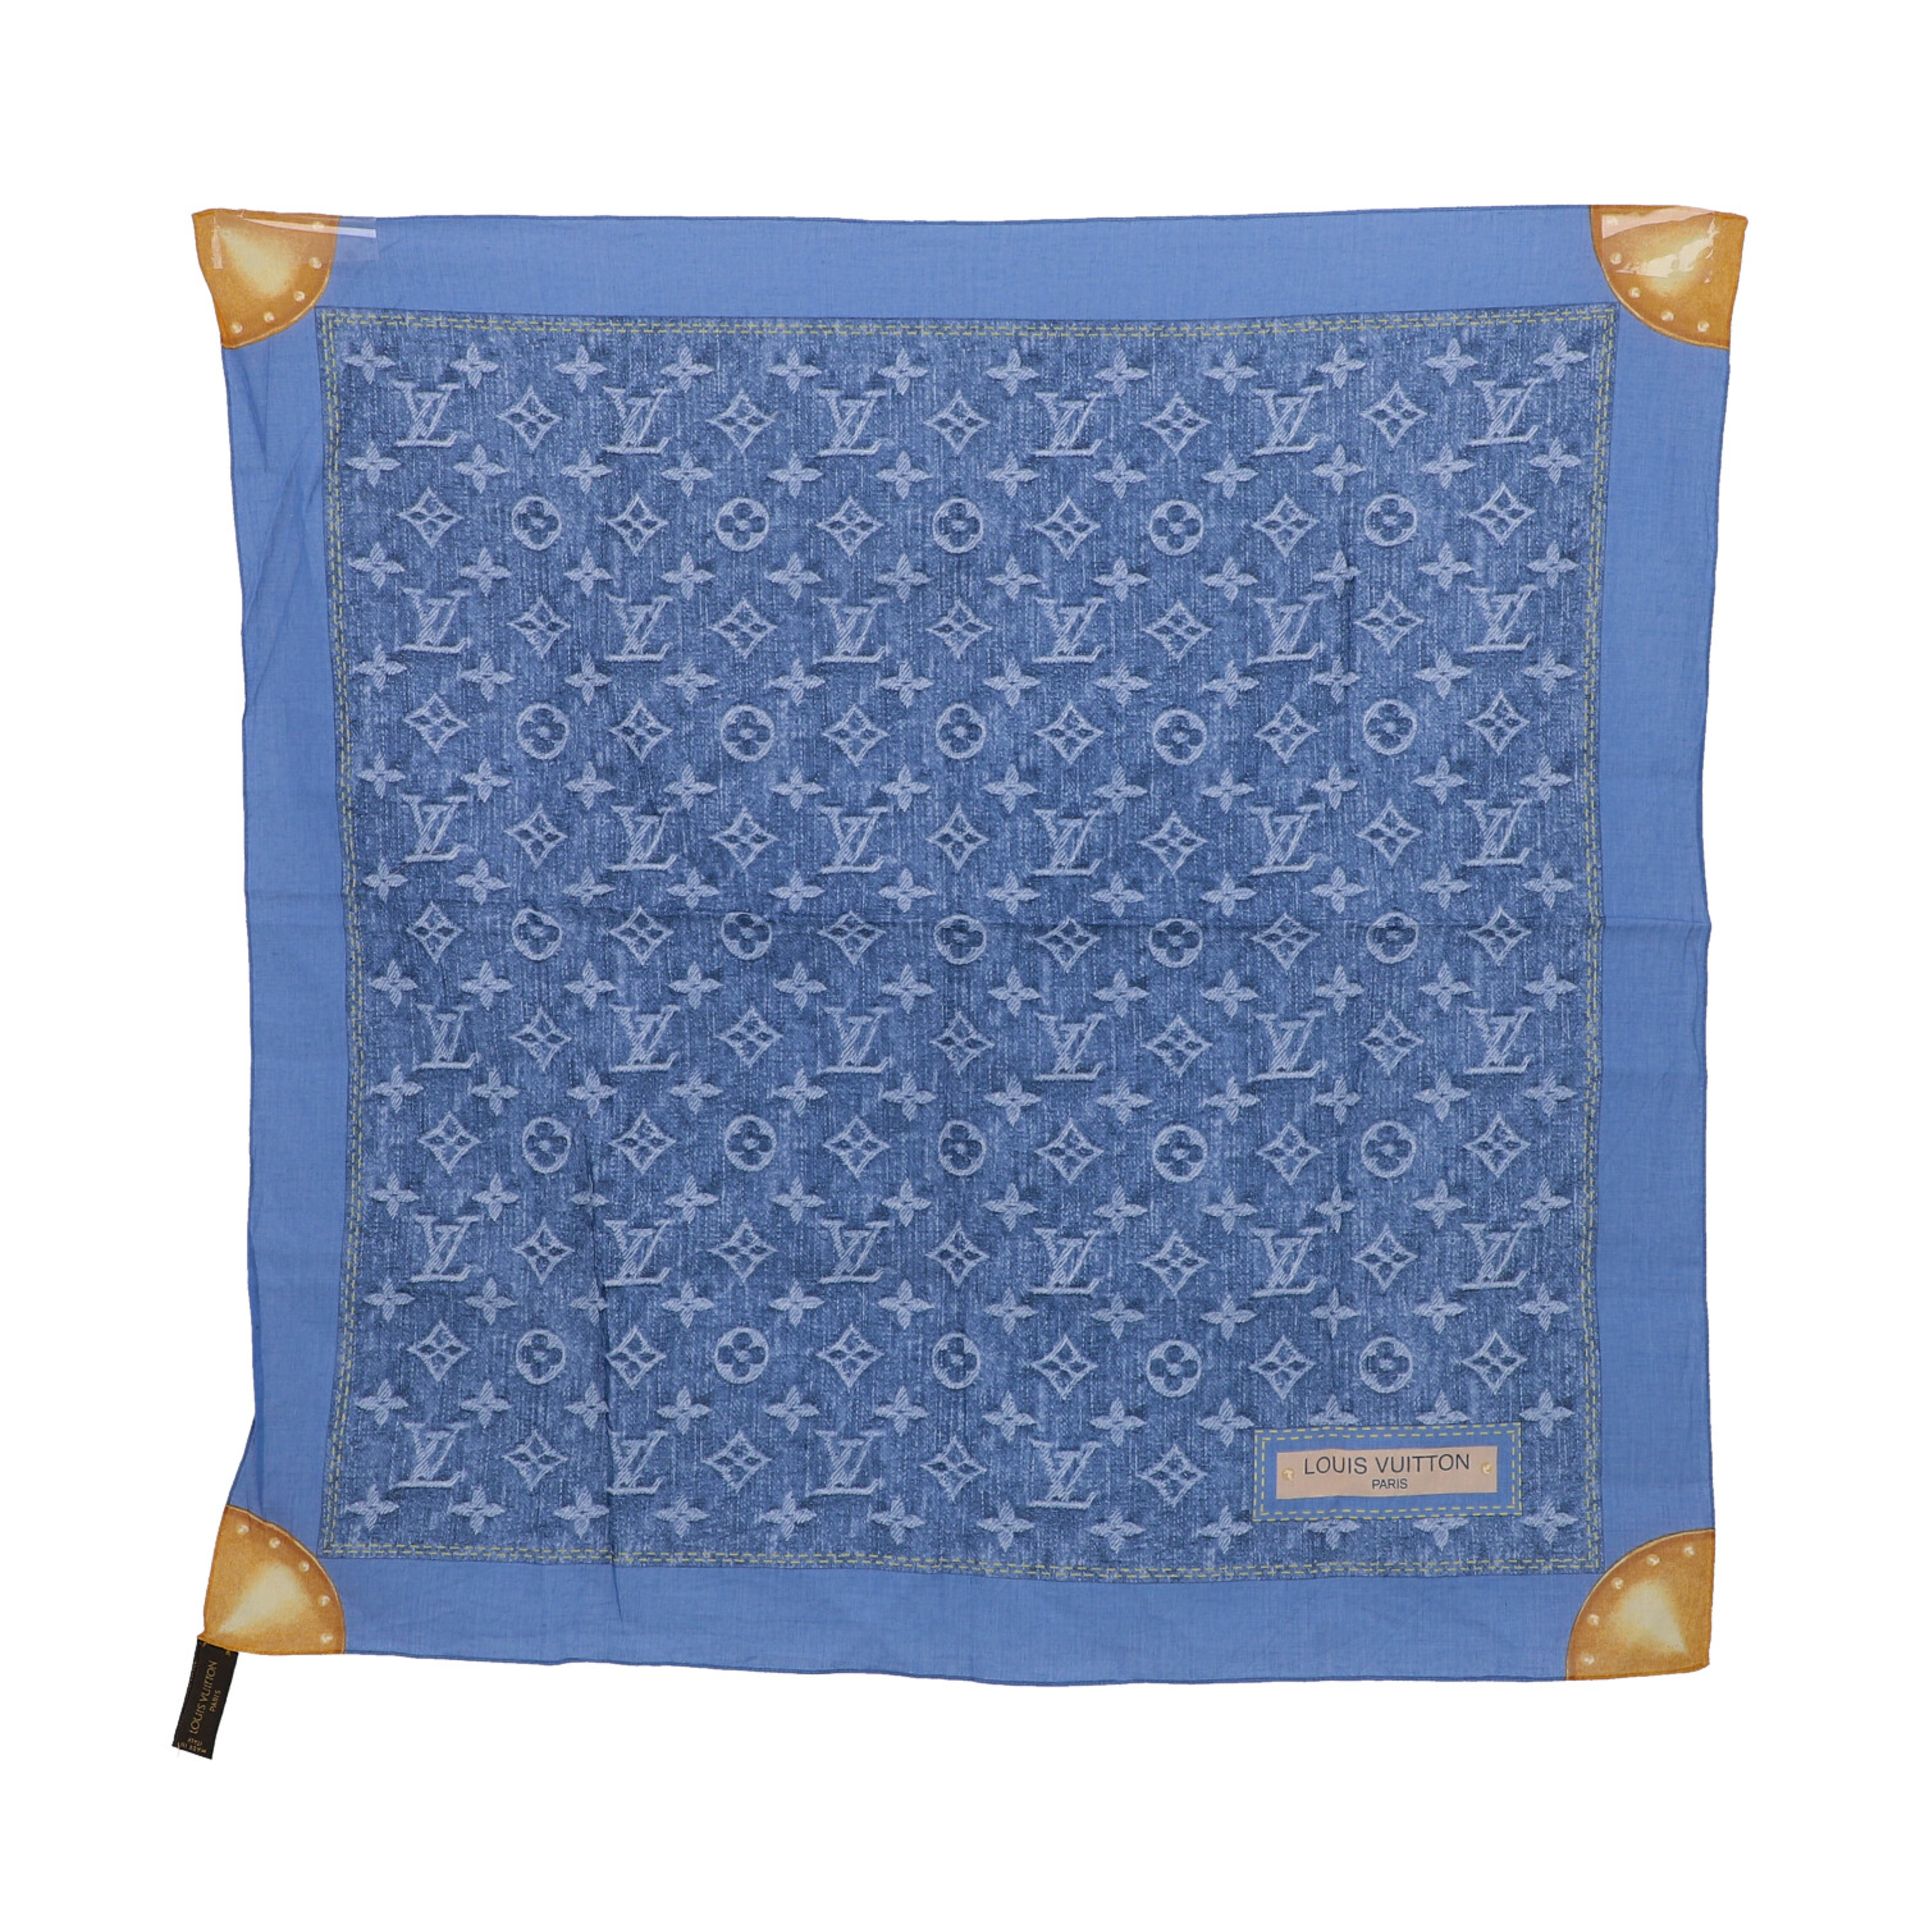 LOUIS VUITTON Tuch "DENIM MONOGRAM", 60x60cm.100% Baumwolle in Blau, Monogram Denim Serie. Guter